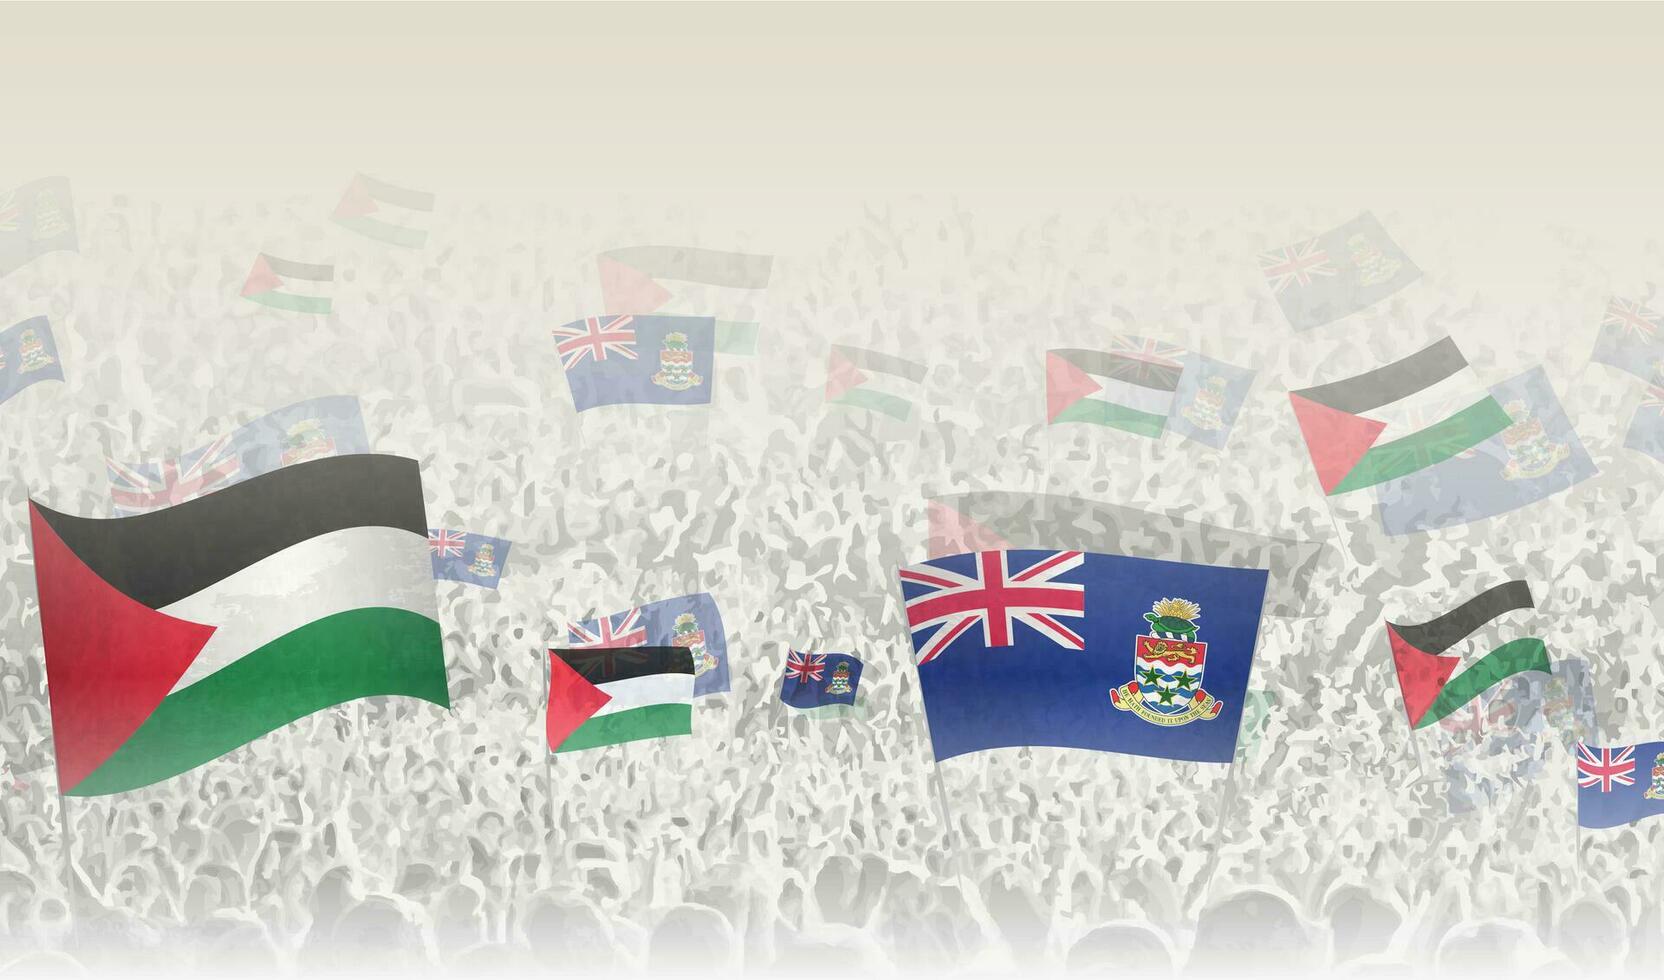 palestina och kajman öar flaggor i en folkmassan av glädjande människor. vektor